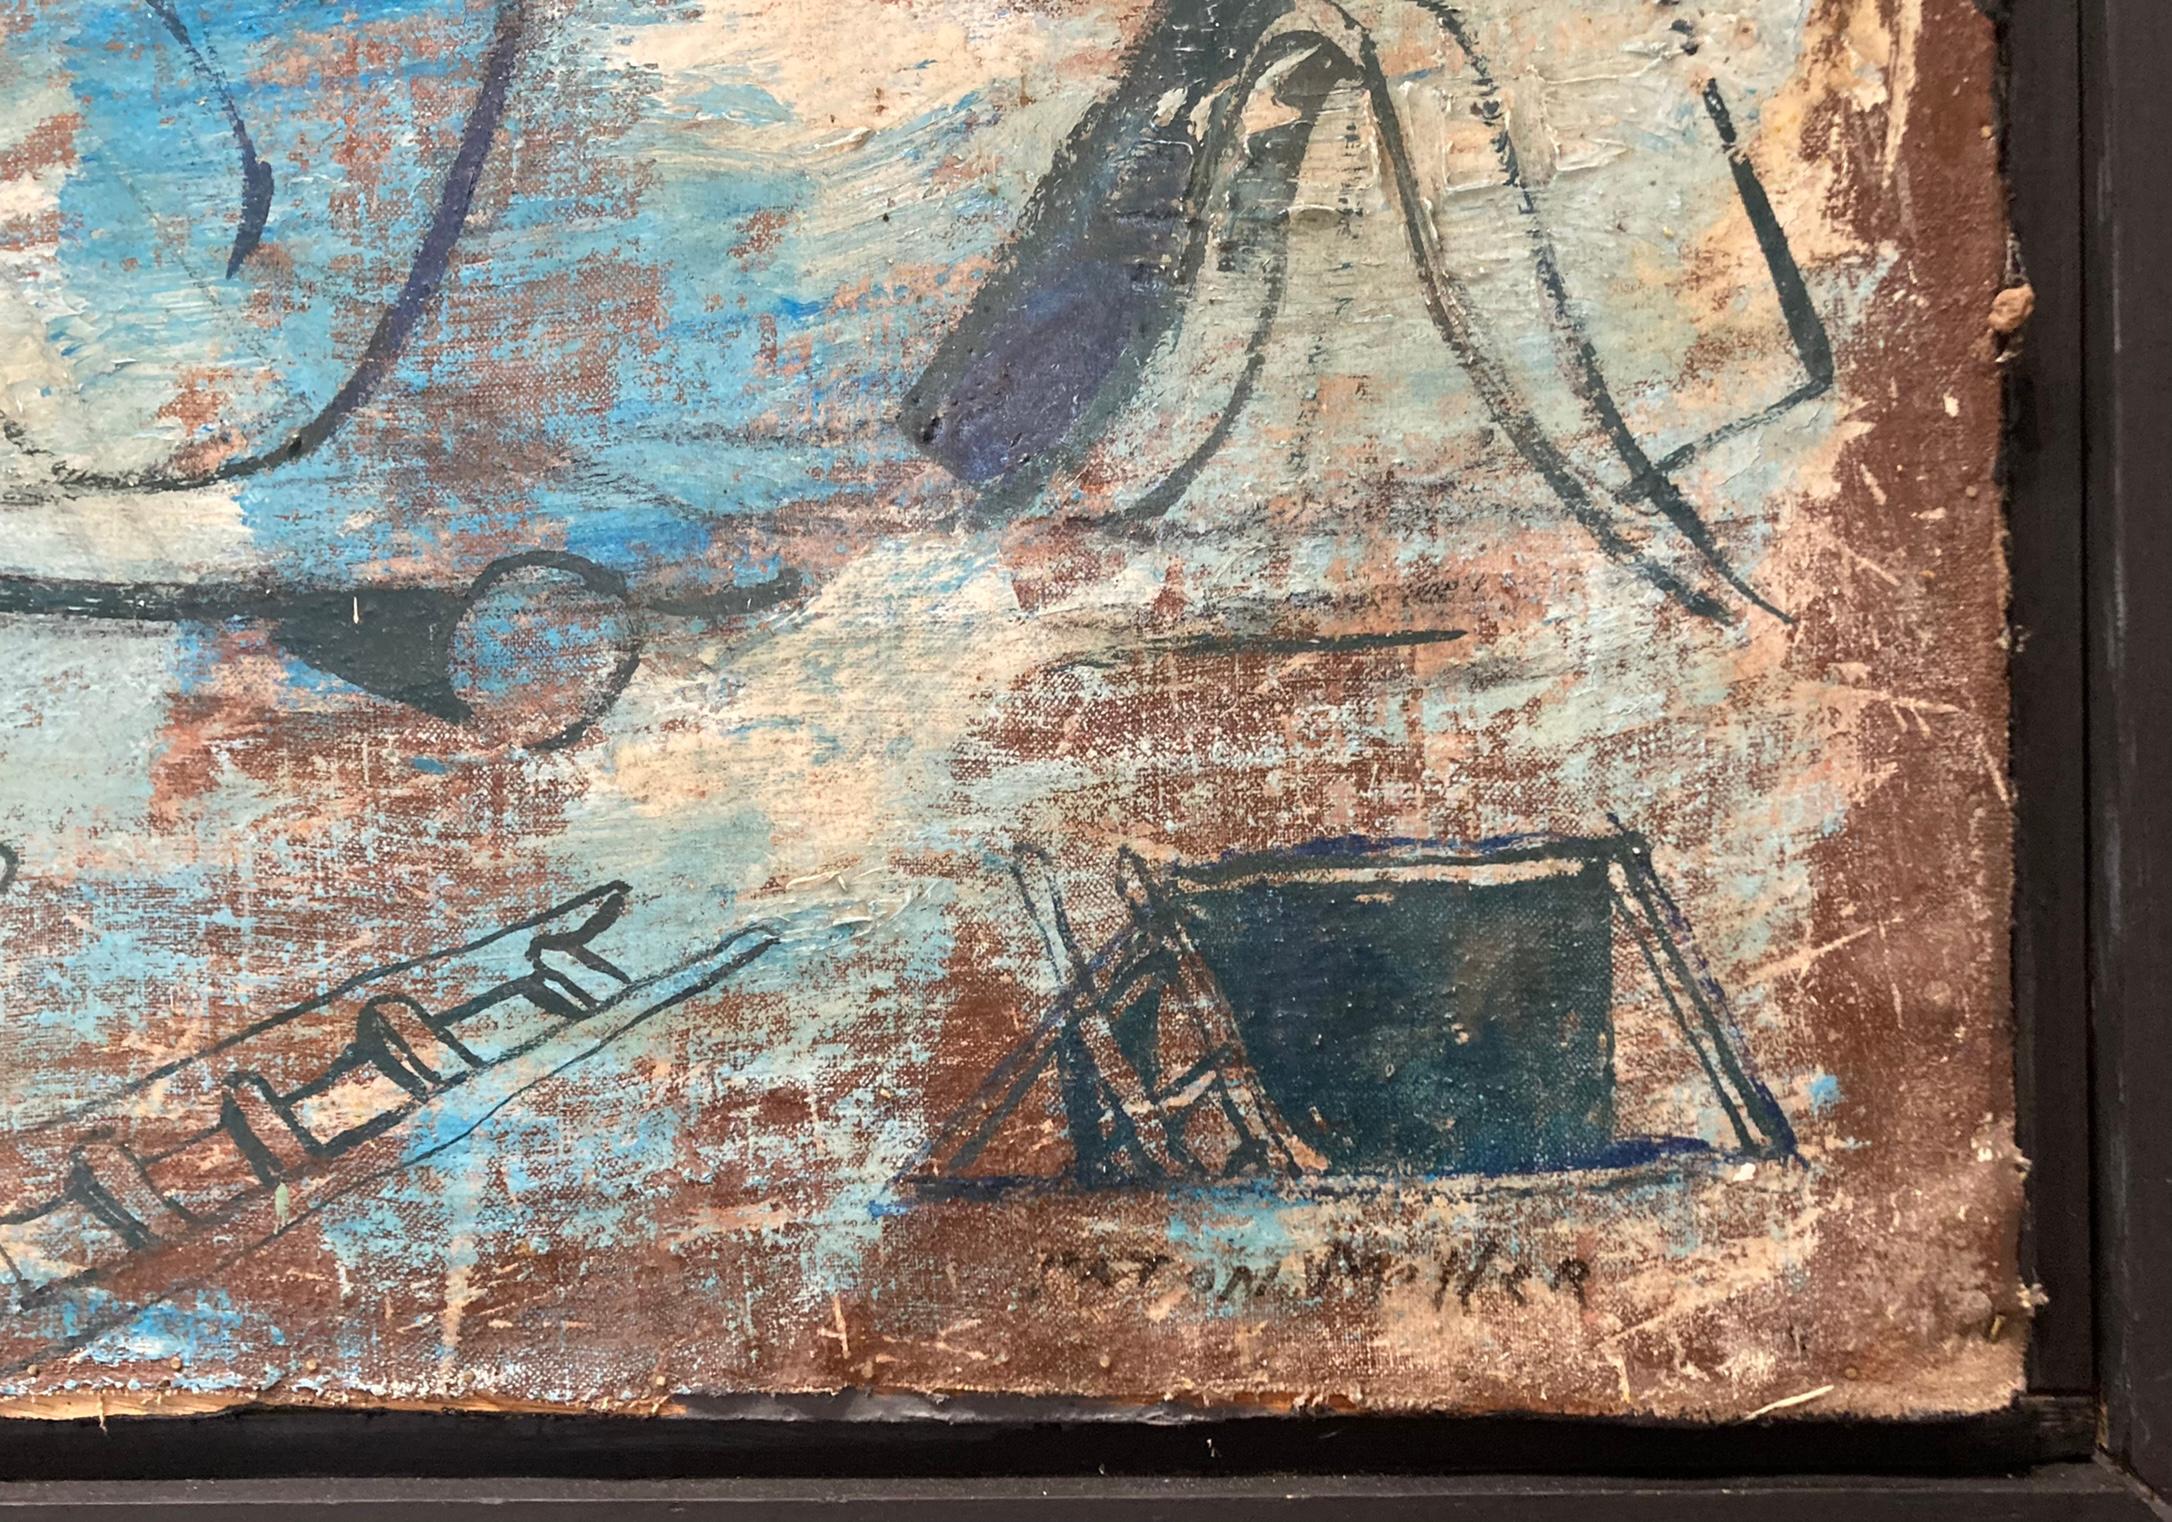 Ein Gemälde in Mischtechnik, das einen sitzenden Mann mit Tätowierungen zeigt. In 